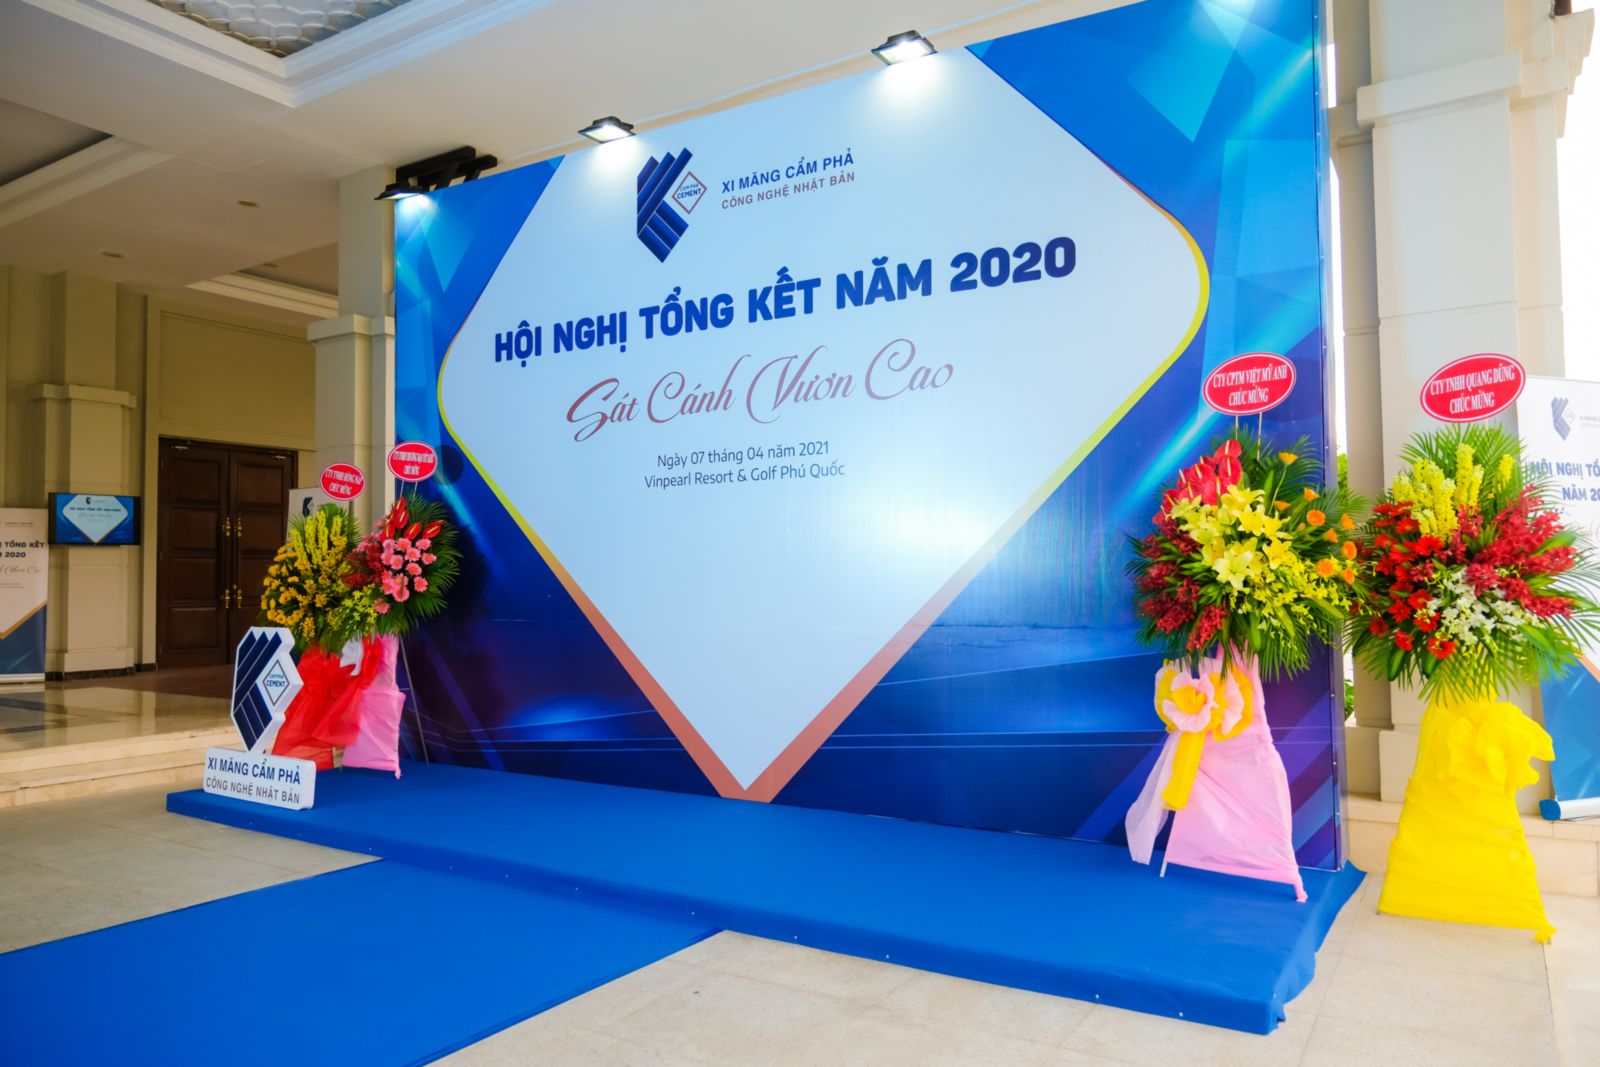 Xi măng Cẩm Phả - Hội nghị khách hàng 2020